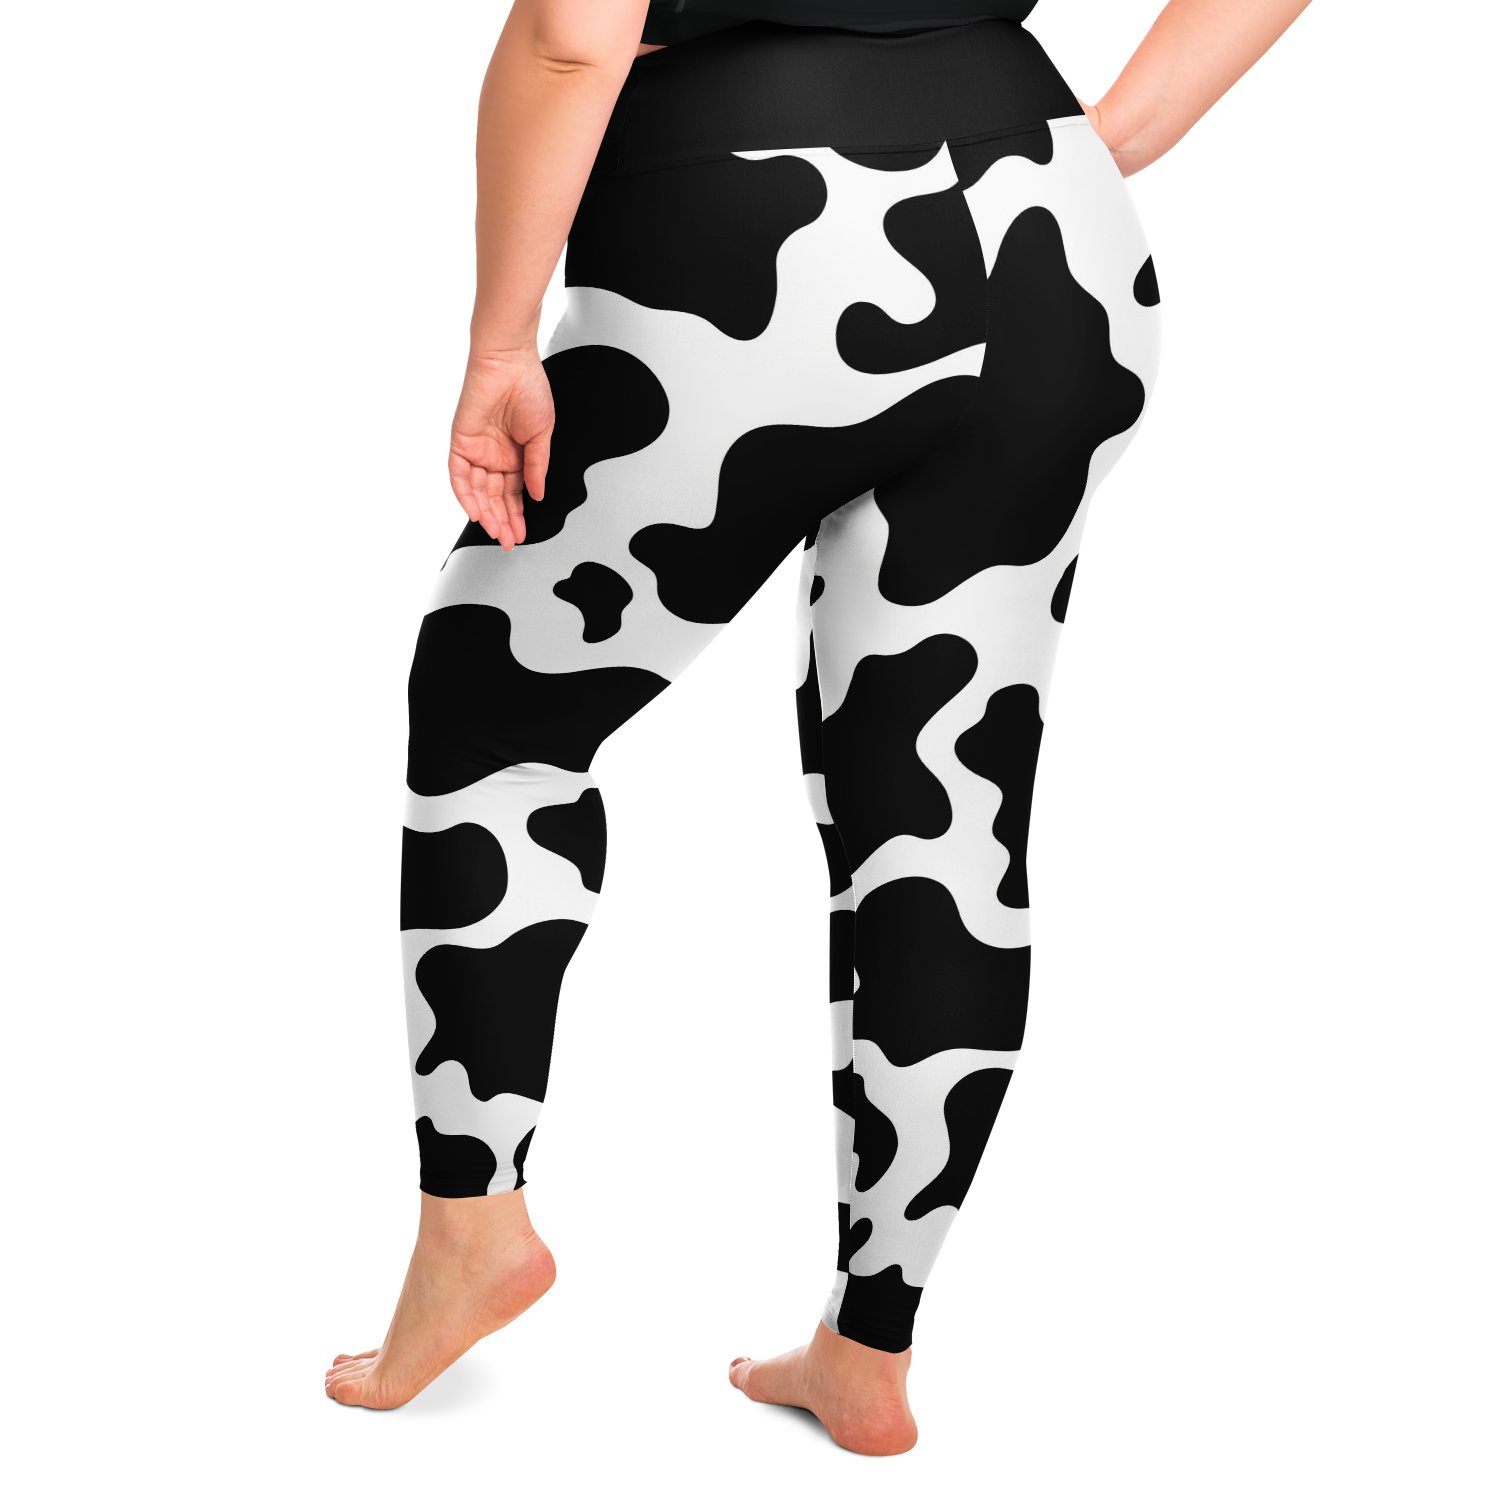 Cow Print Leggings - Plus Size Women's Cow Print Leggings Official Merch  CL1211 - Cow Print Shop